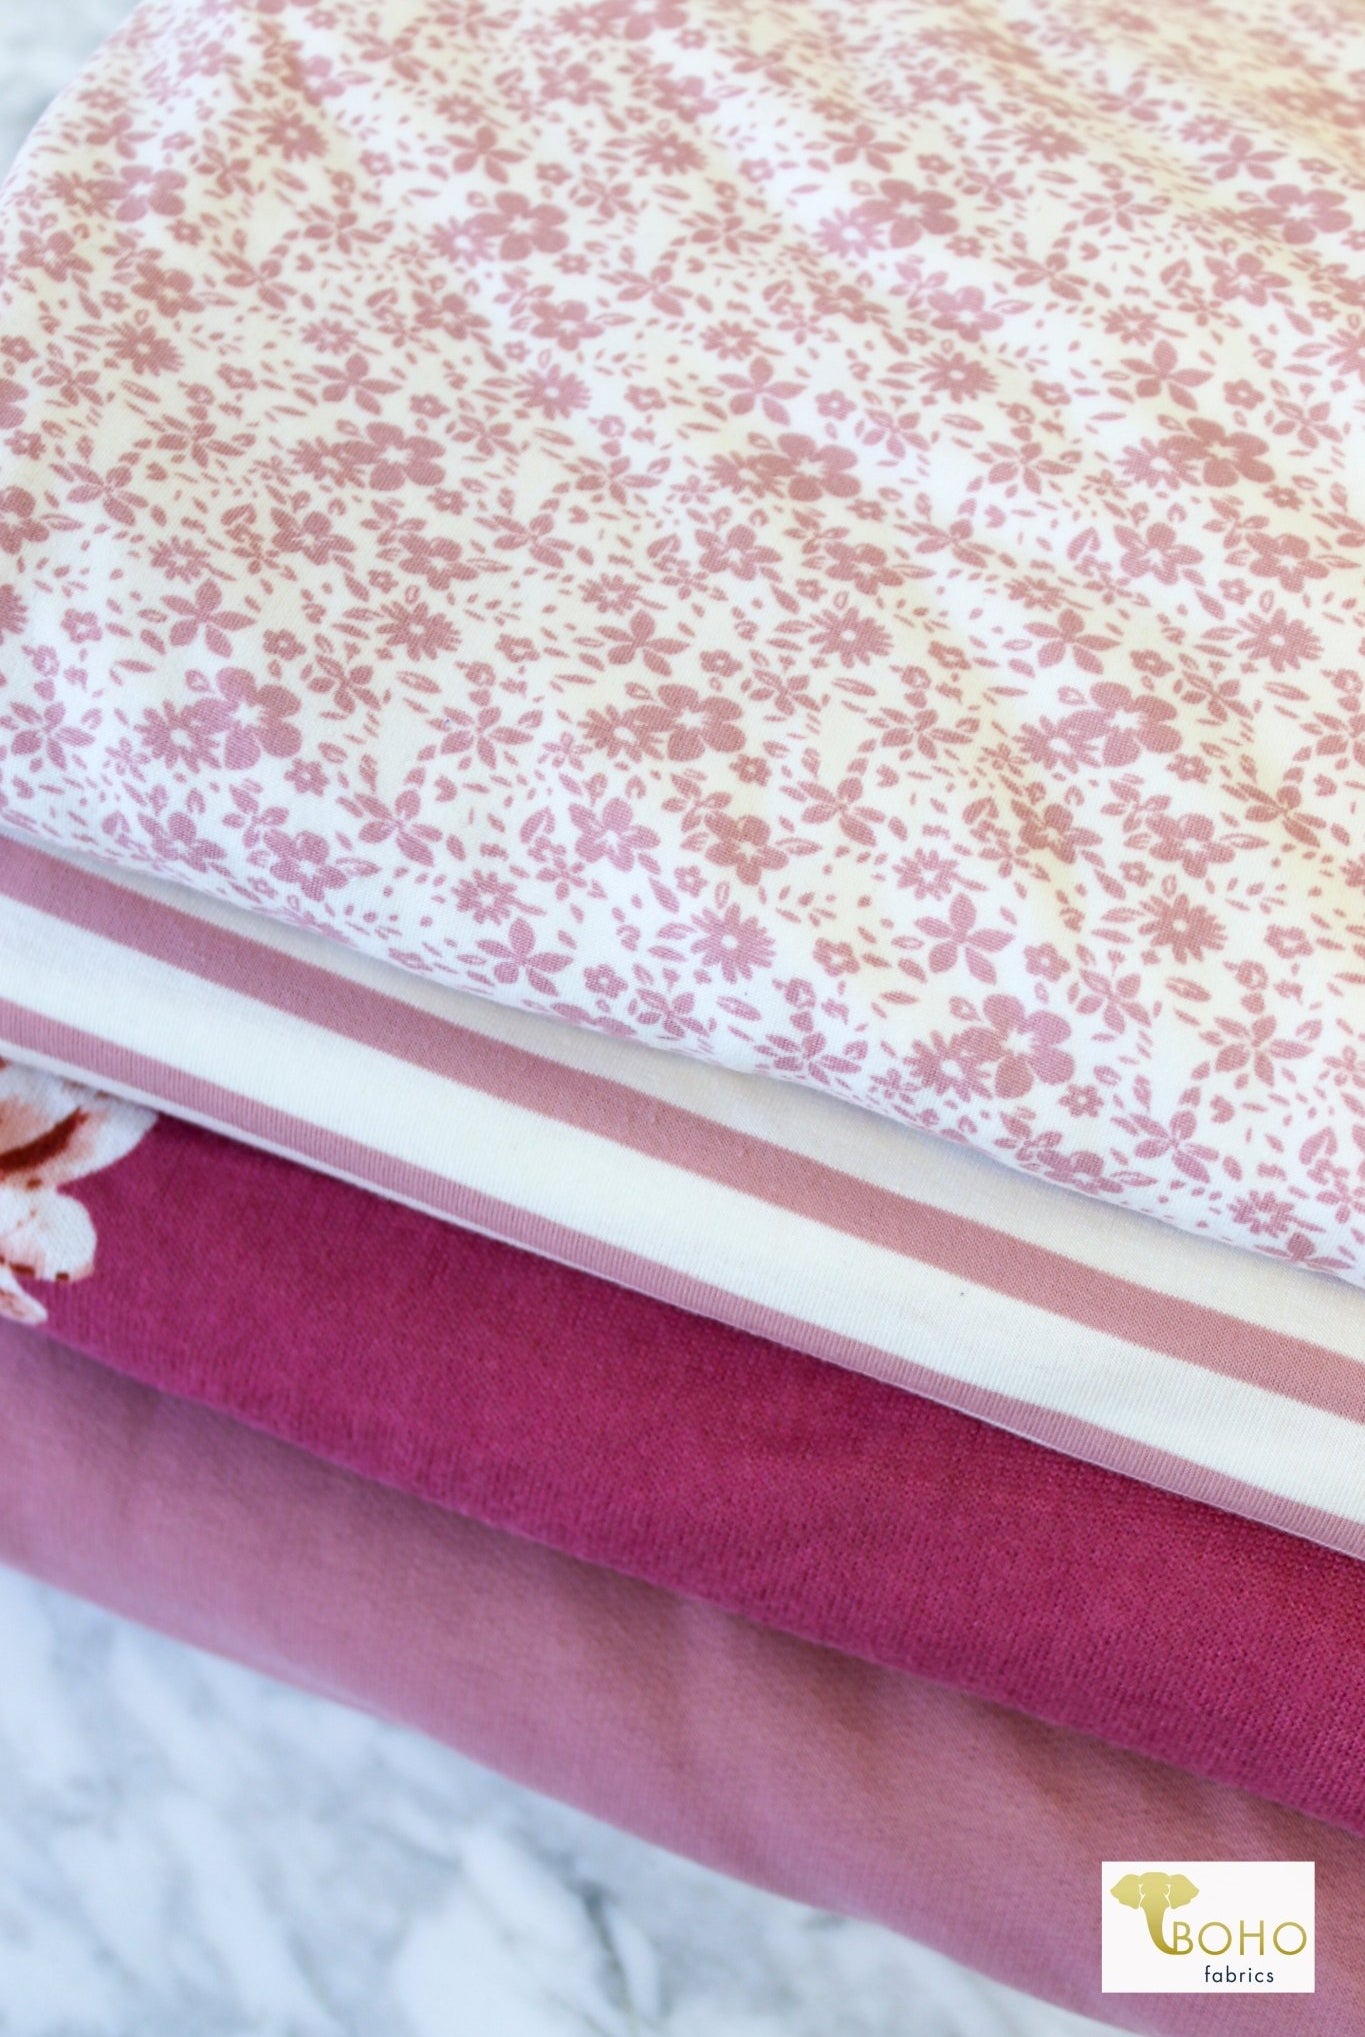 CM Bundle Stocking! Rosey Florals CB-K-150 - Boho Fabrics